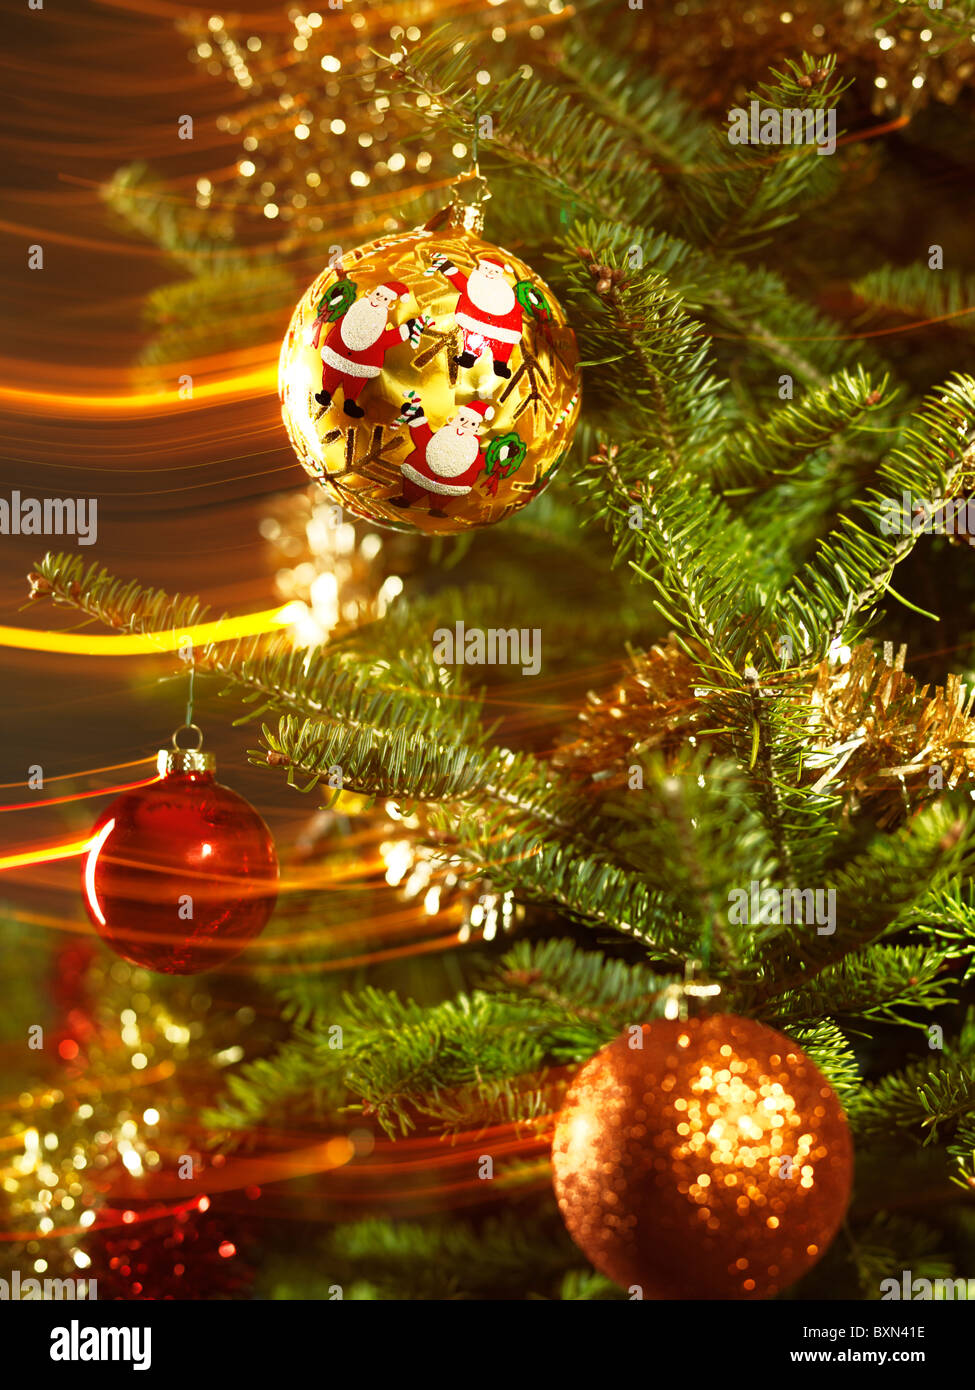 Foto Effetti Di Natale.Decorazione Per Albero Di Natale Su Albero Di Natale Con Magici Effetti Di Luce Foto Stock Alamy